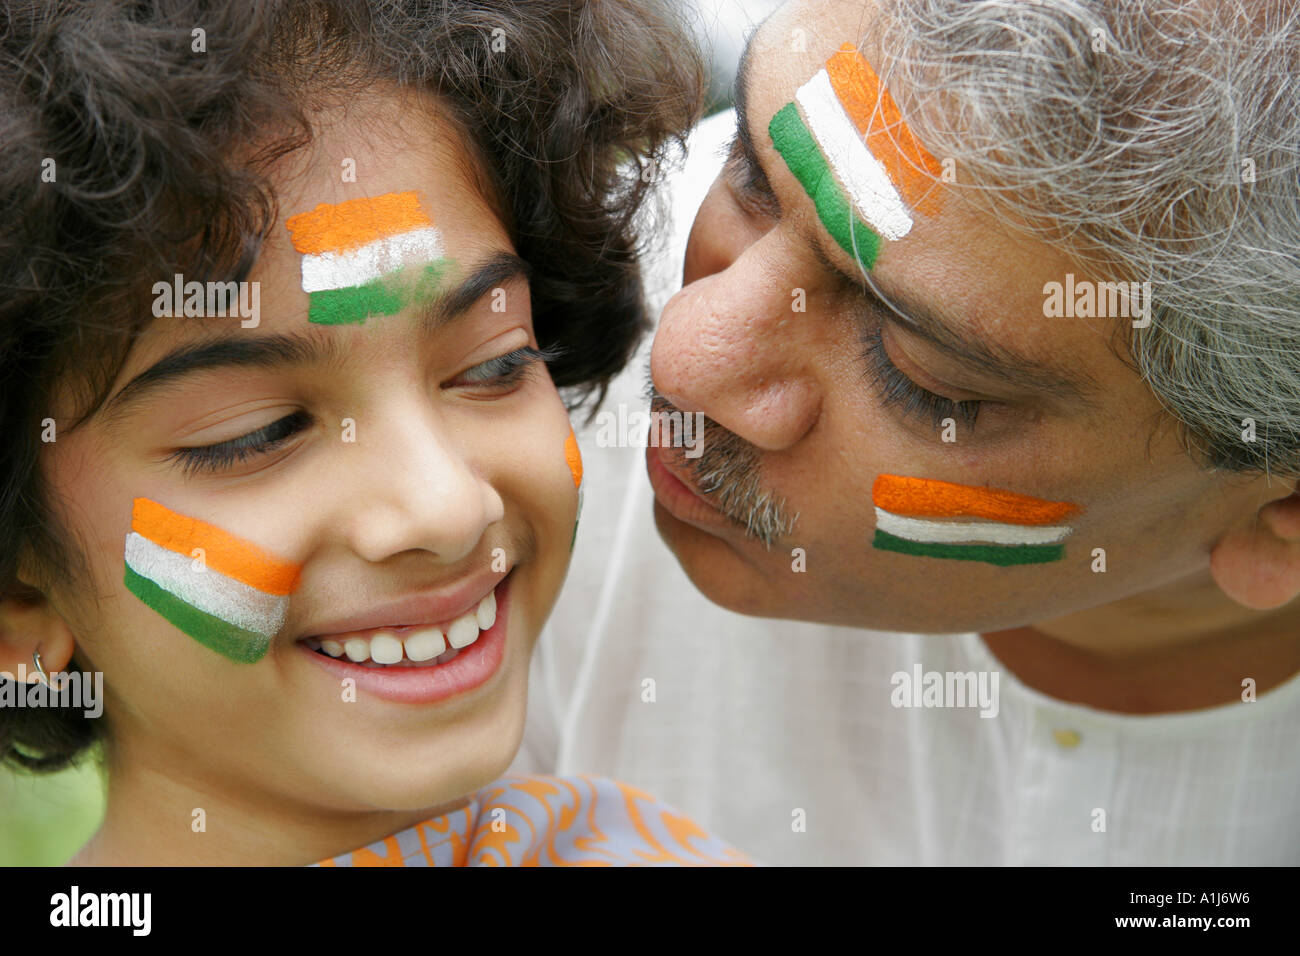 Drapeau de l'inde peint sur le visage, célébrant la Journée de l'indépendance indienne Inde, MR#191&646 Banque D'Images